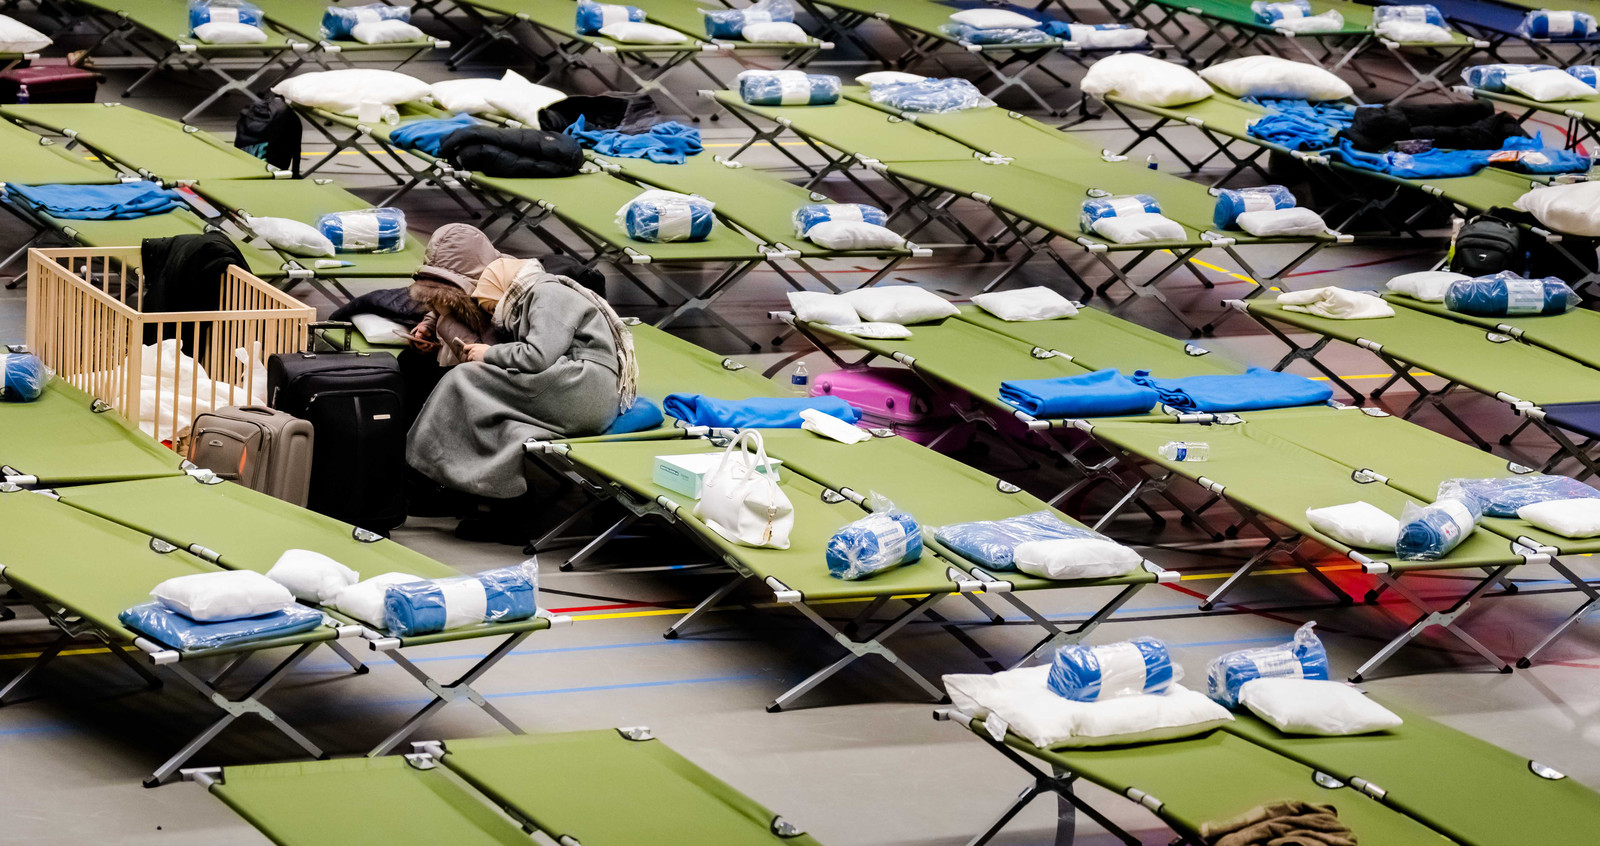 Oekraïense vluchtelingen worden tijdelijk opgevangen in een sporthal in Rotterdam-Zuid. In de hal kunnen mensen verblijven in afwachting van het gereedkomen van plaatsen voor opvang van langere duur.